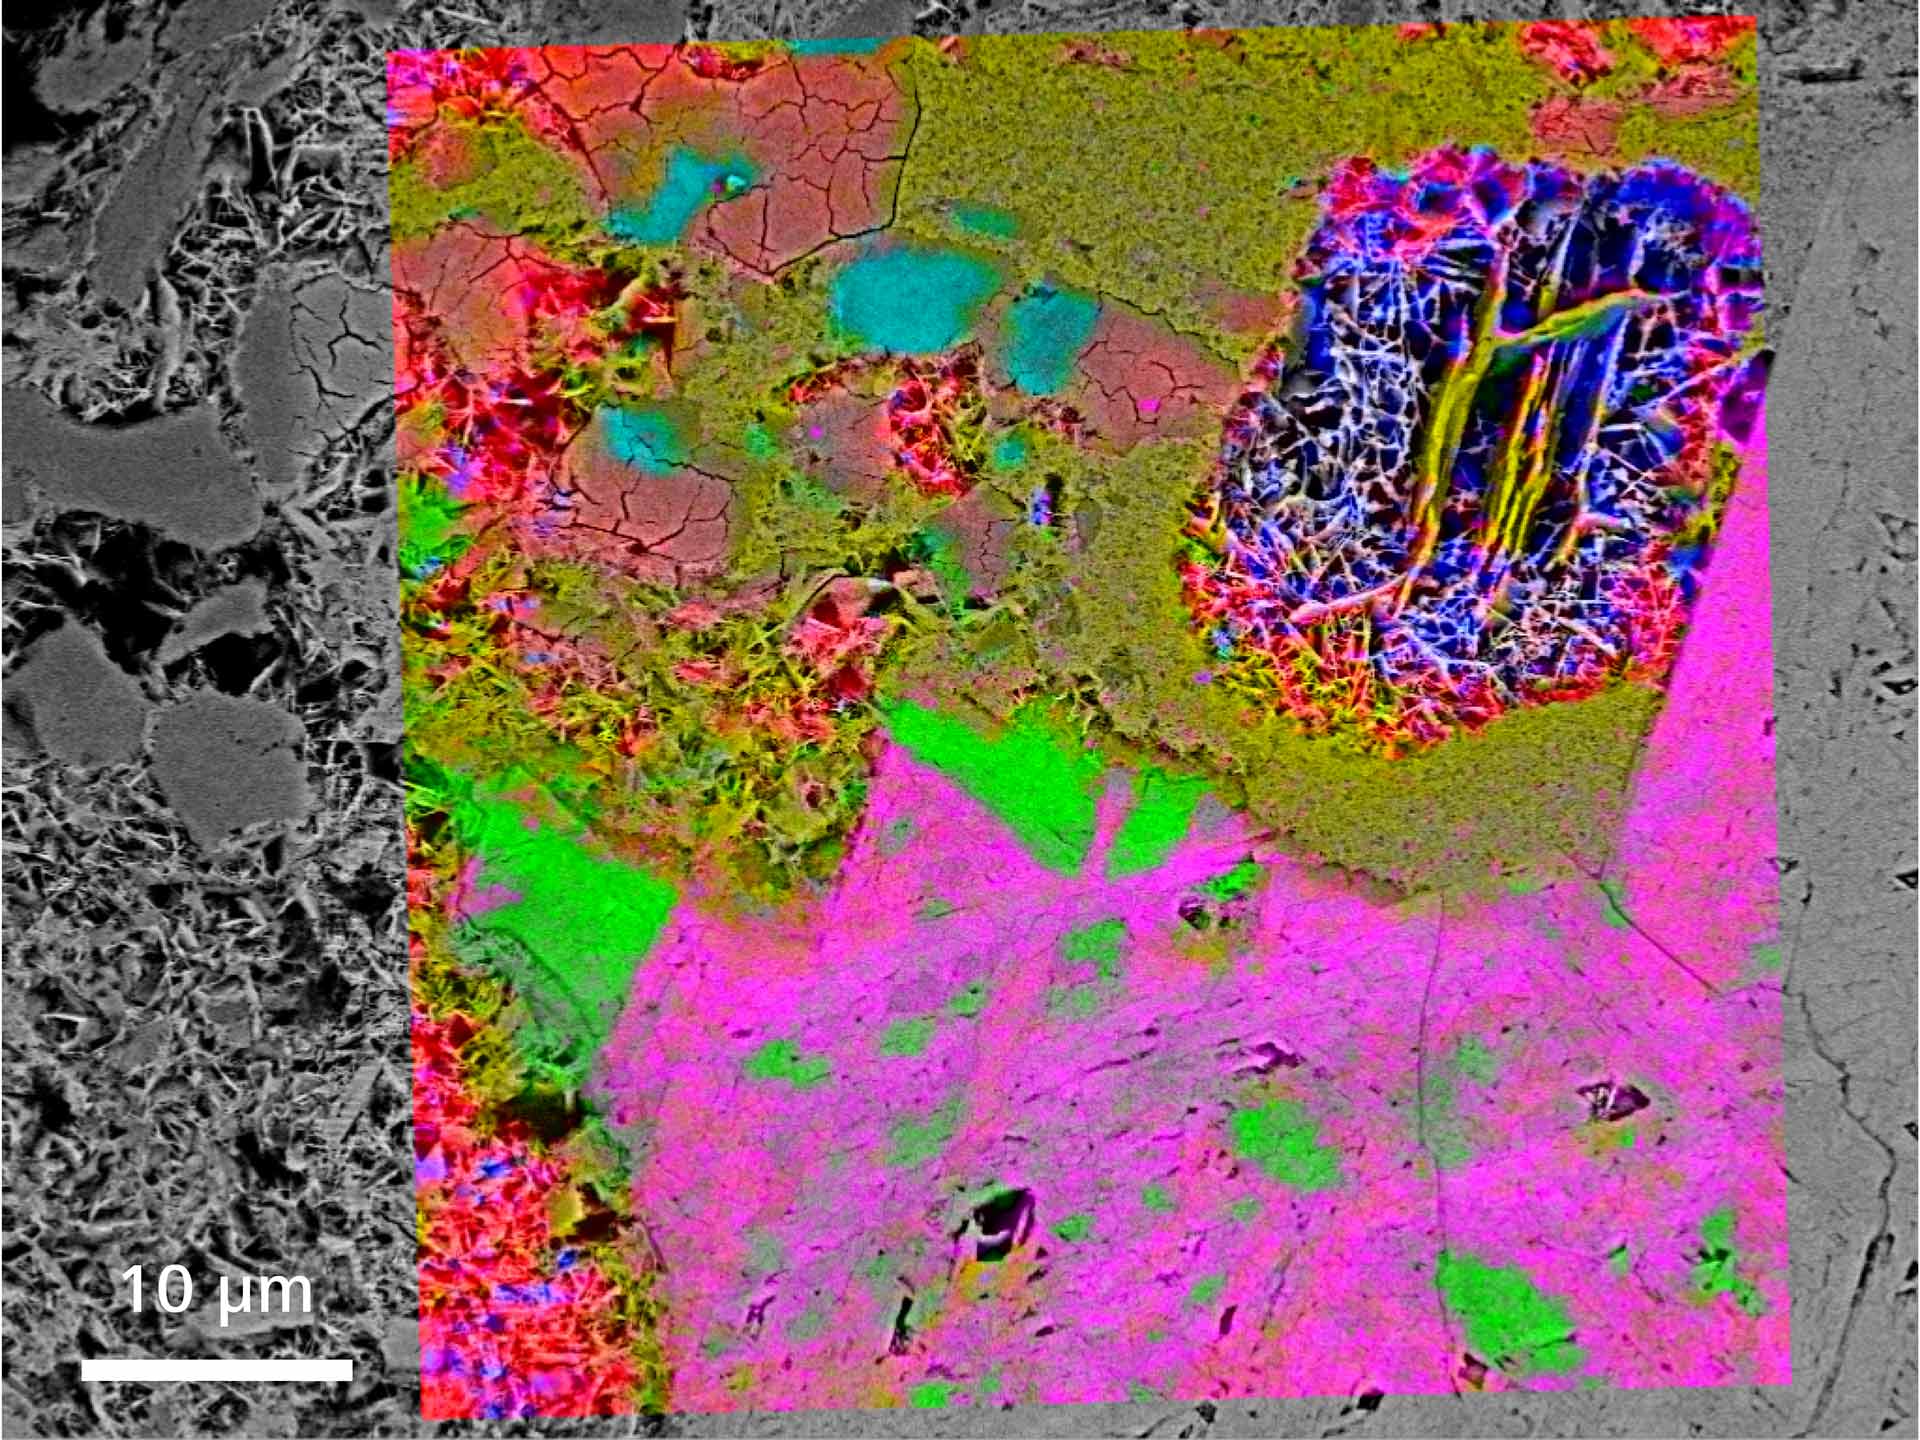 Minéralogie du fer : Identification Raman de minerai de fer, image MEB et cartes Raman superposées. (L'hématite est en rouge, bleu, vert, orange et rose ; la goethite est en bleu clair).